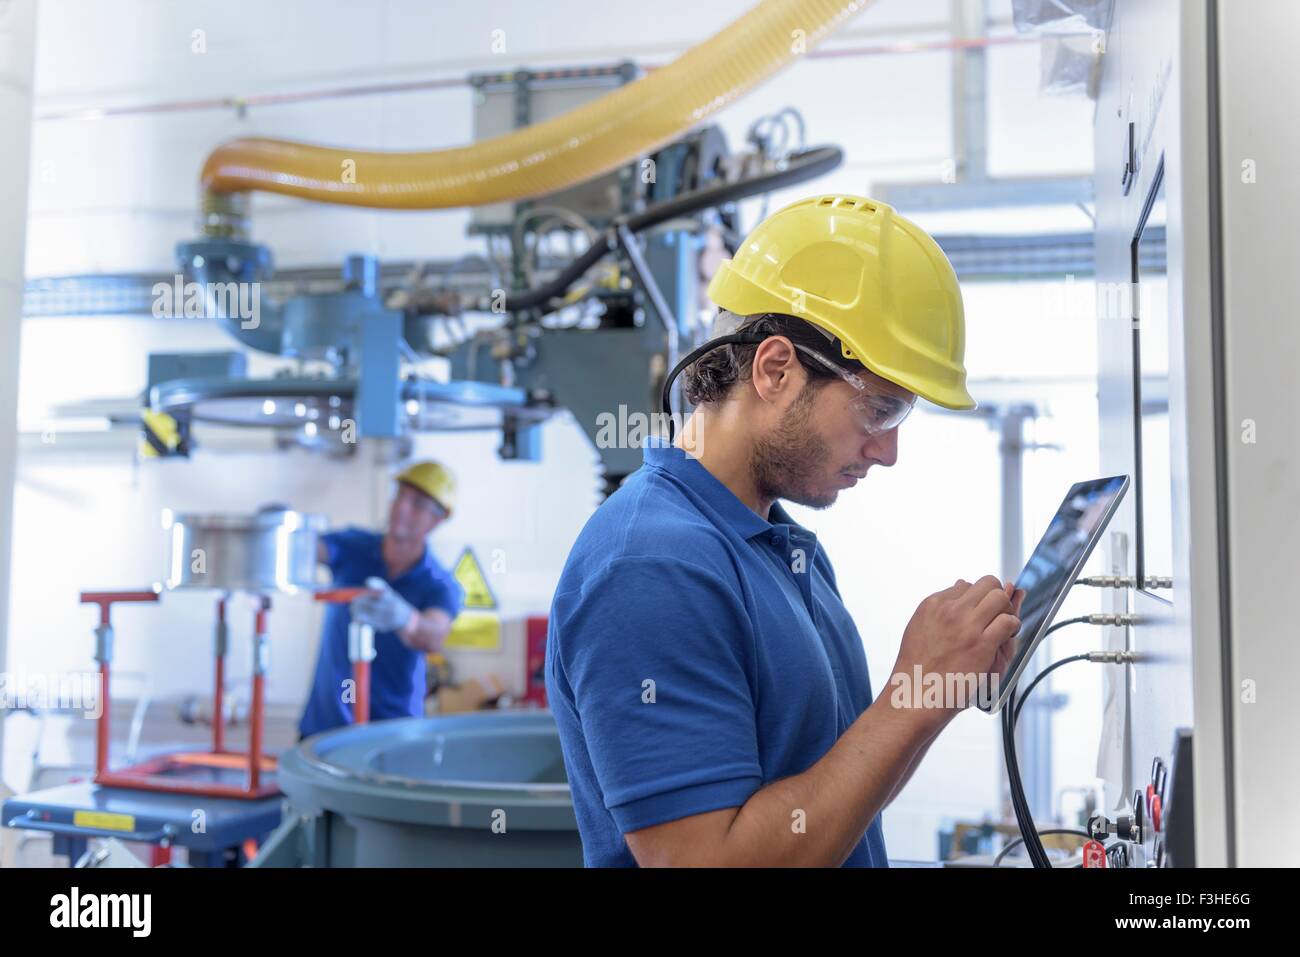 L'environnement d'exploitation des travailleurs de l'équipement de test with digital tablet in electronics factory Banque D'Images